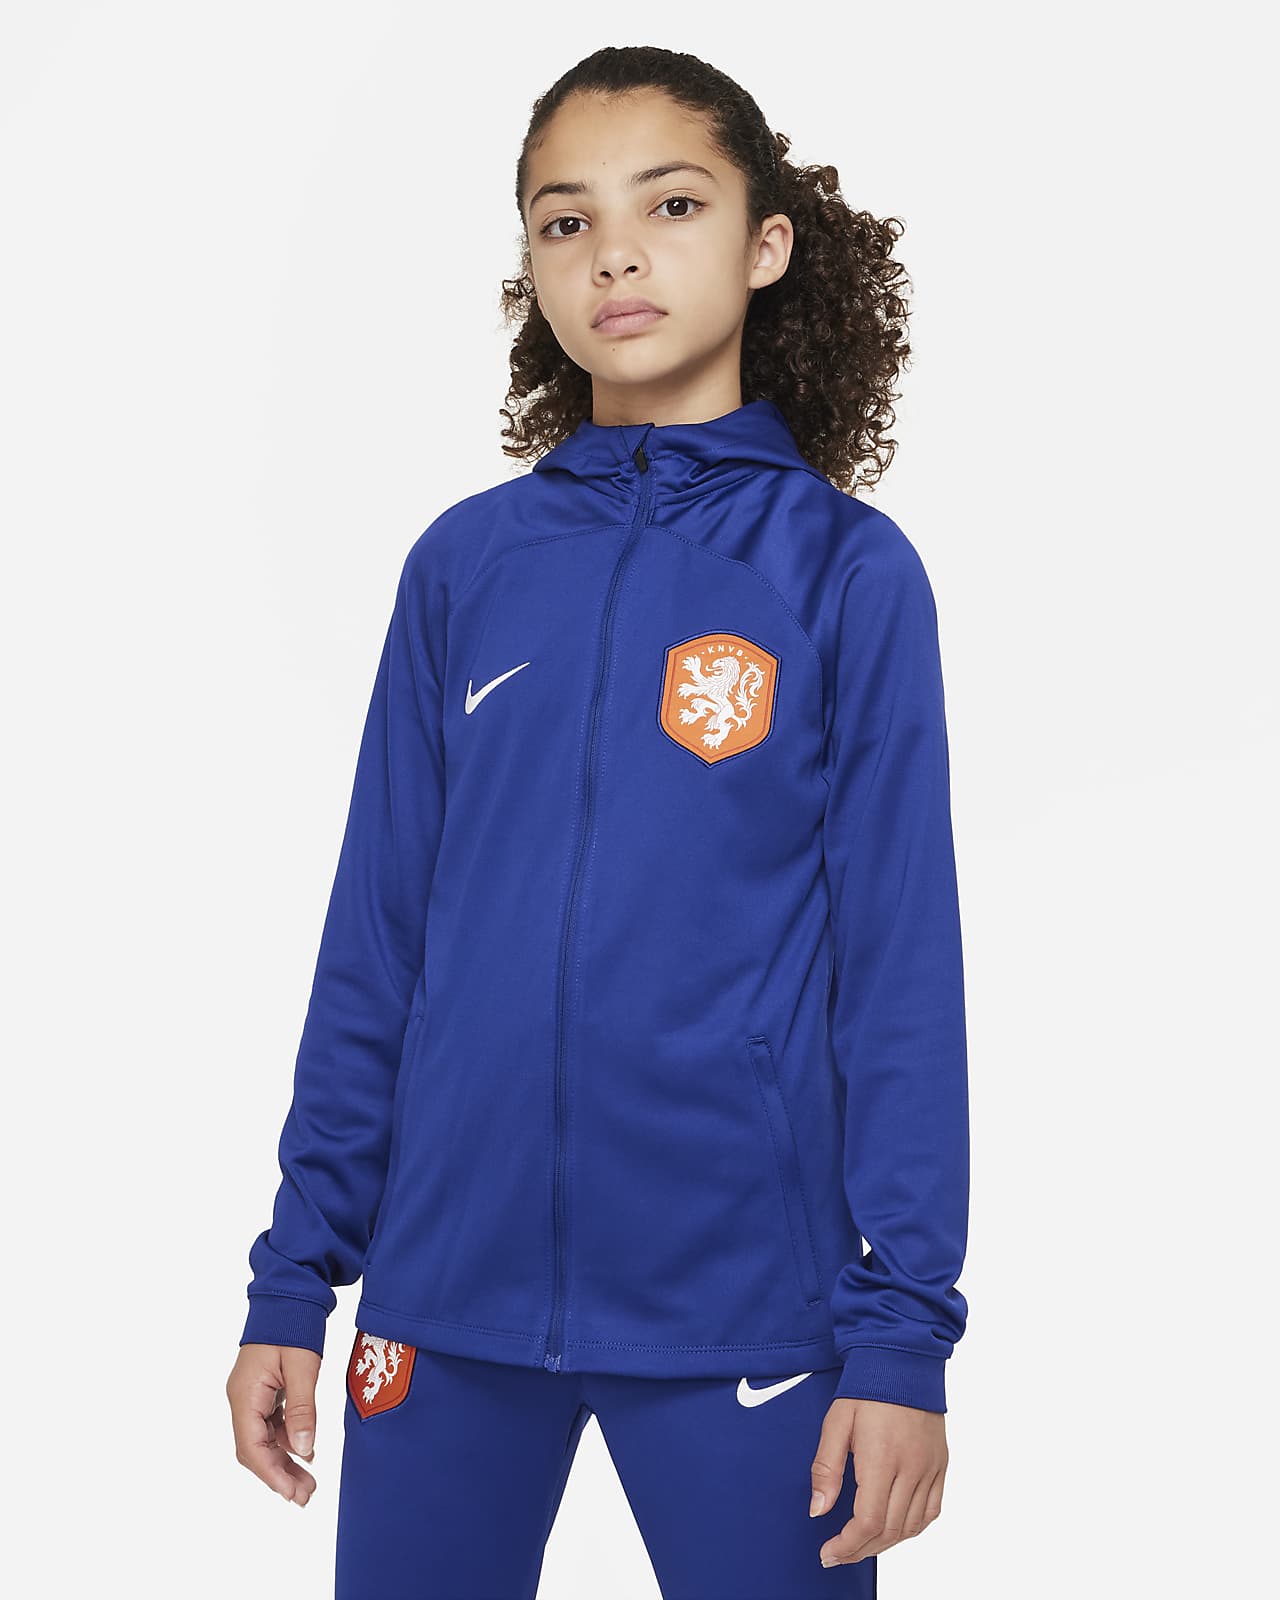 Nederland Strike Nike Dri-FIT voetbaltrainingspak met capuchon voor kids. Nike